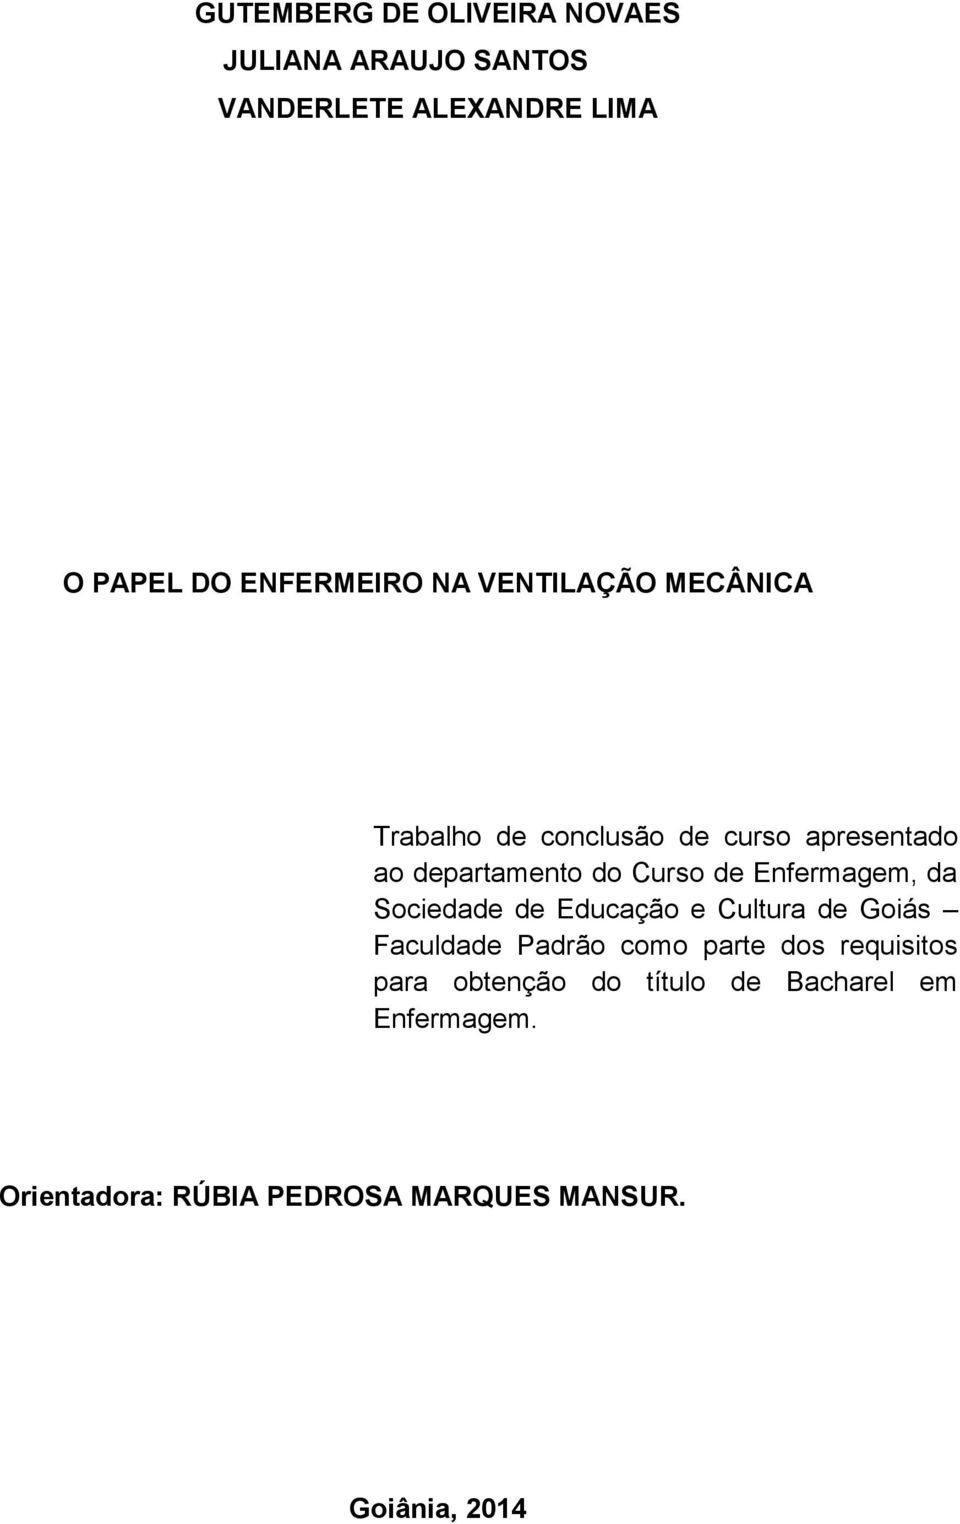 Enfermagem, da Sociedade de Educação e Cultura de Goiás Faculdade Padrão como parte dos requisitos